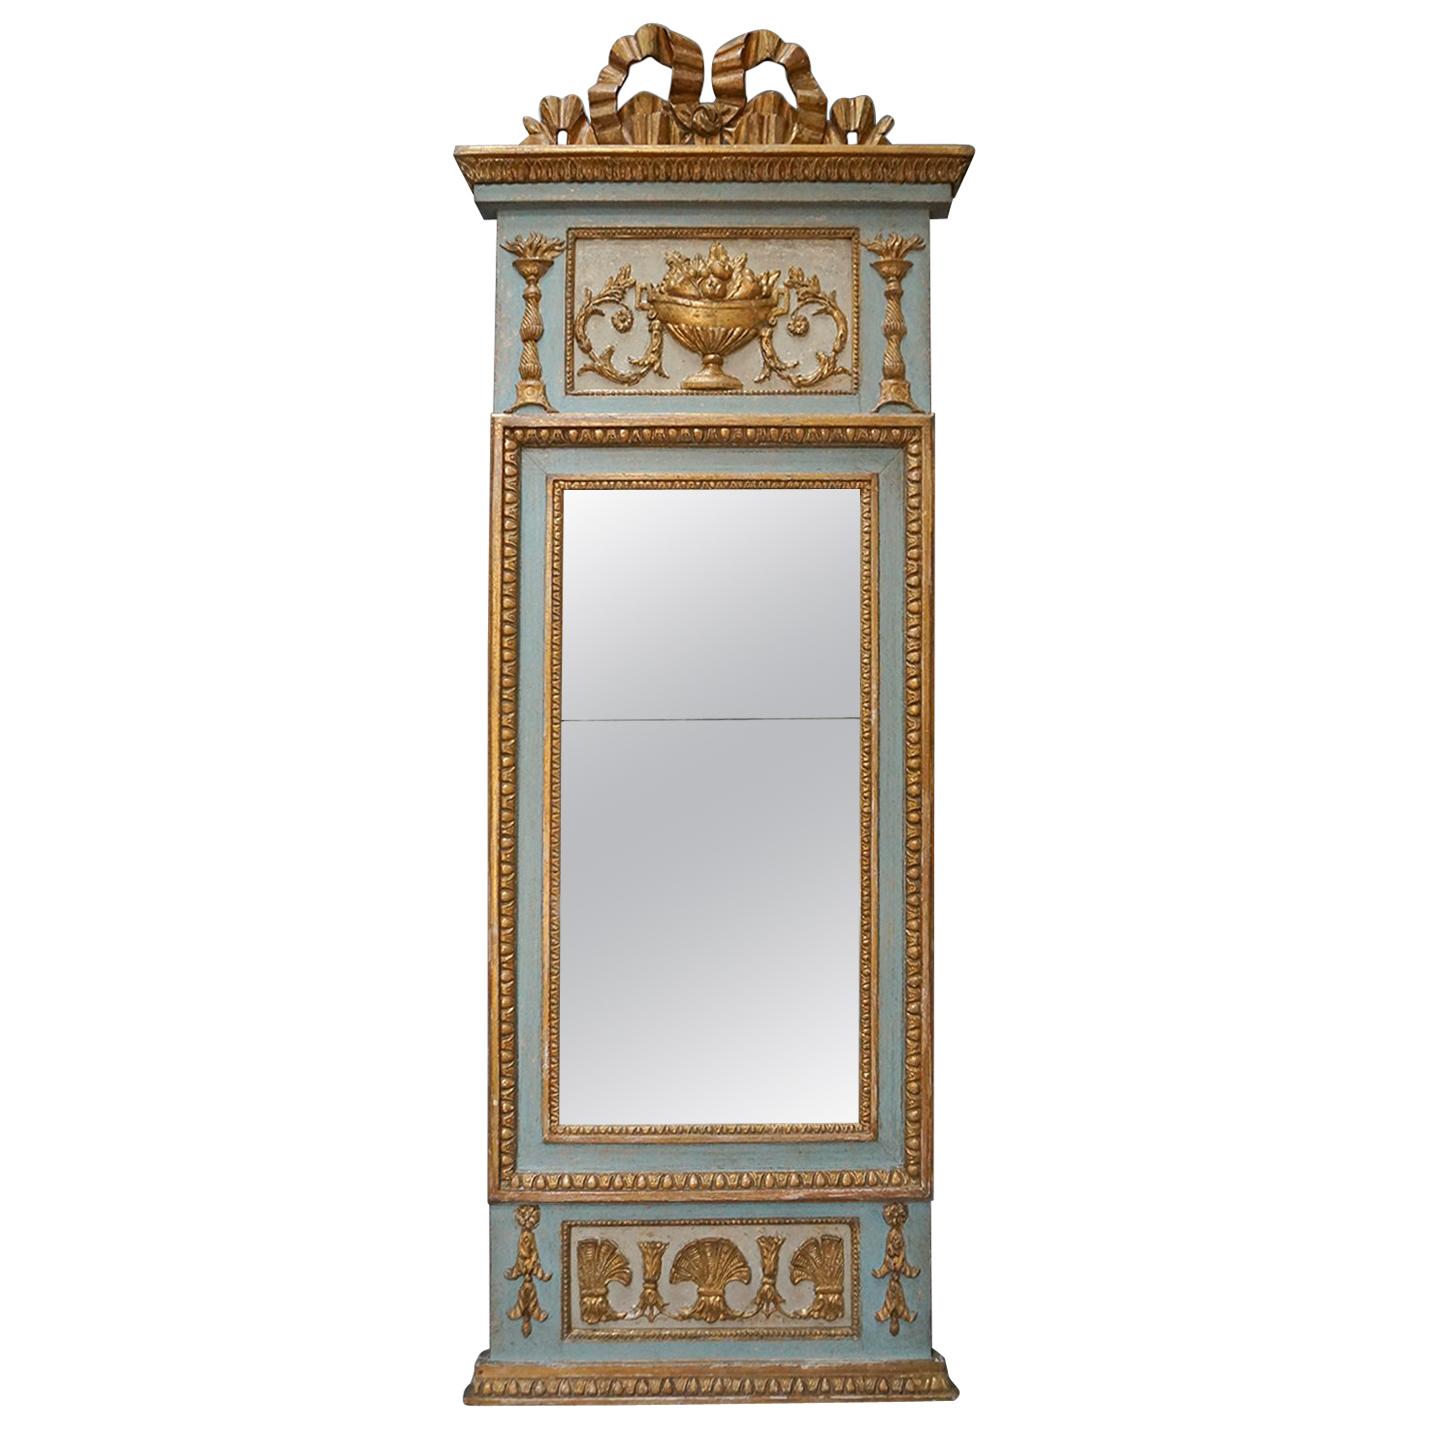 Elegant Period Gustavian Pier Mirror